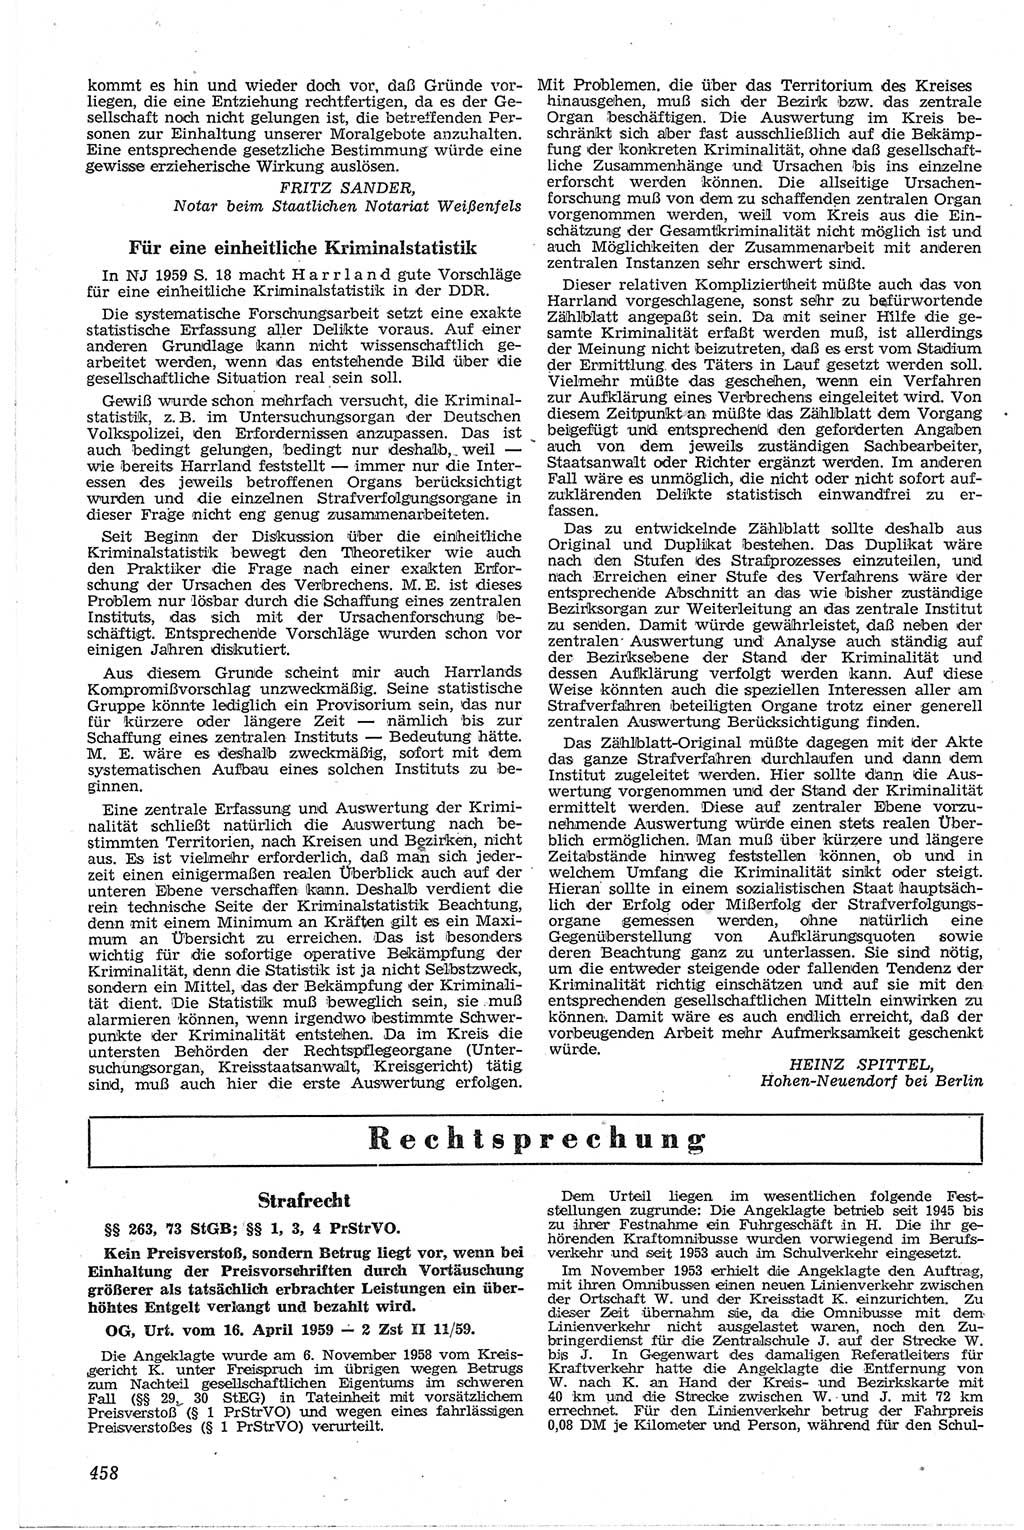 Neue Justiz (NJ), Zeitschrift für Recht und Rechtswissenschaft [Deutsche Demokratische Republik (DDR)], 13. Jahrgang 1959, Seite 458 (NJ DDR 1959, S. 458)